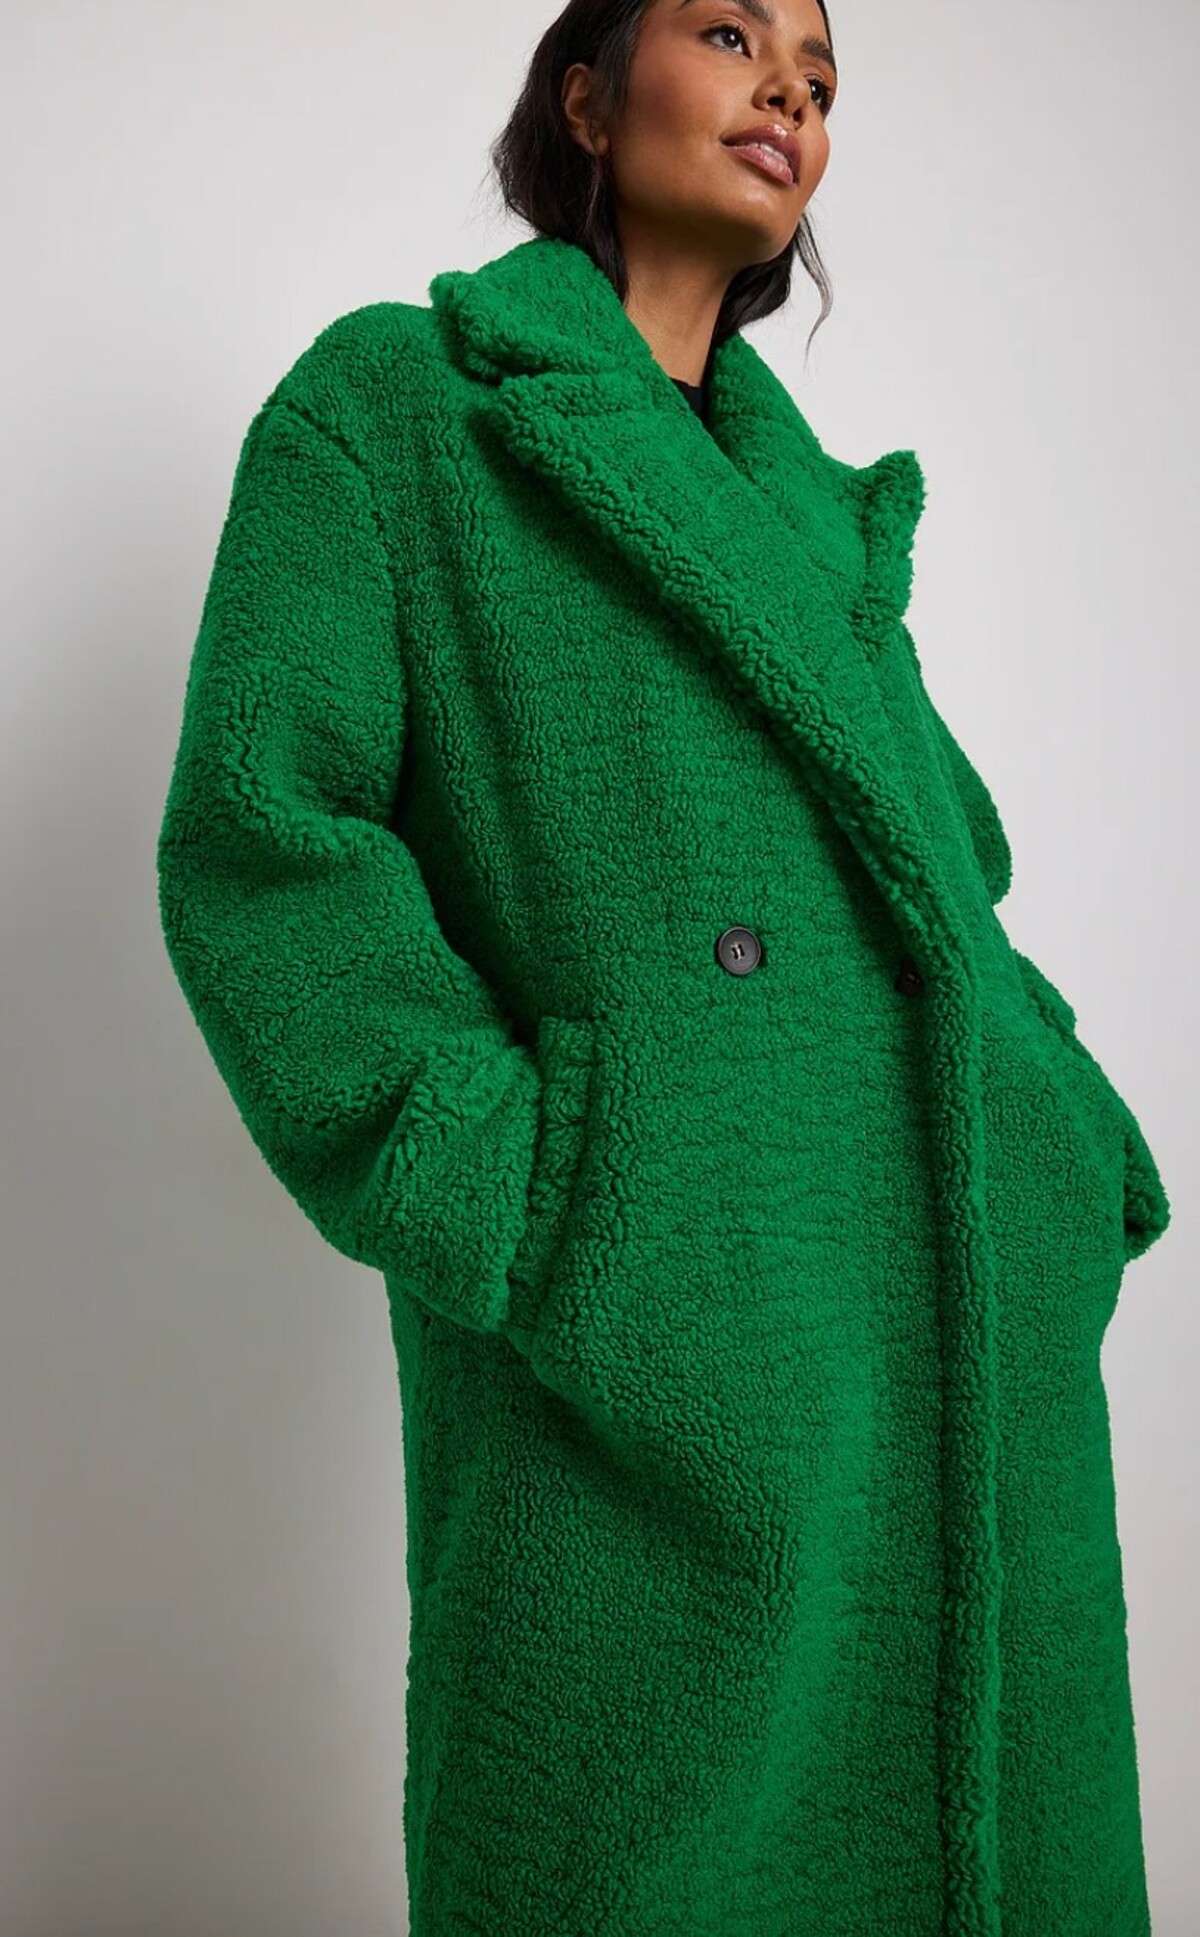 Tento štýlový zelený teddy kabát kúpiš v e-shope značky NA-KD za dostupných 52,47 eura.